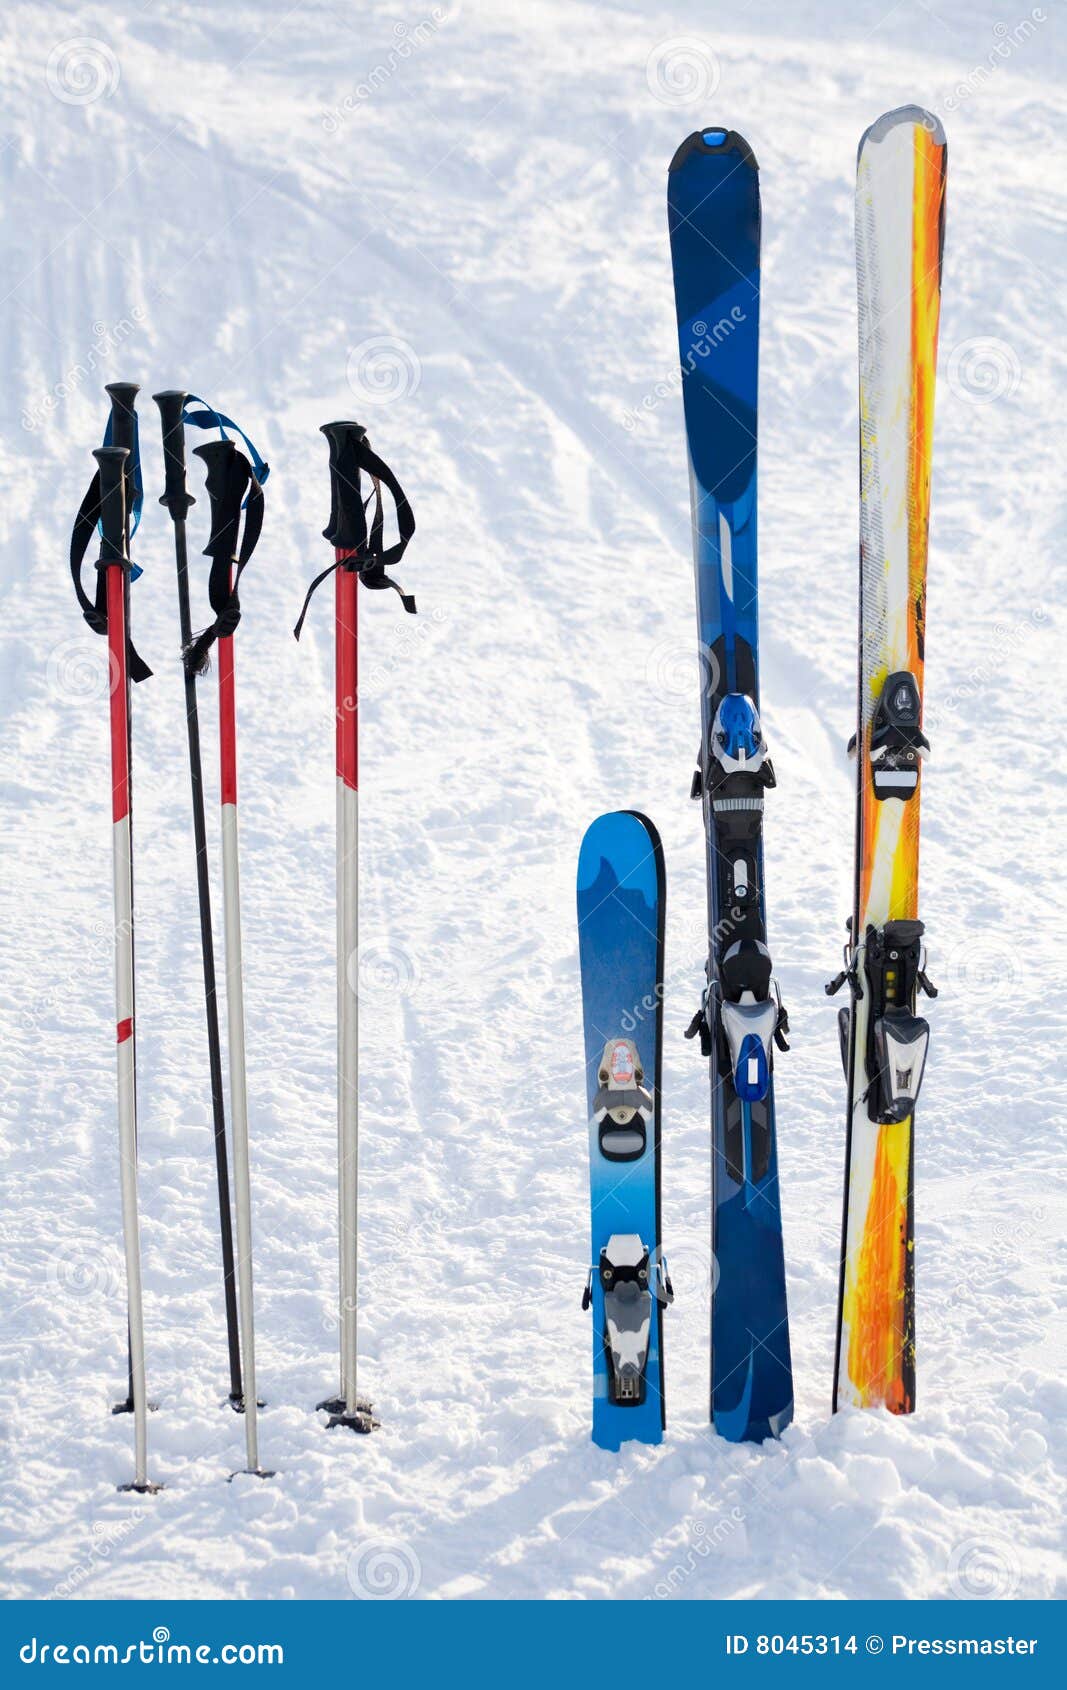 Skiing Equipment 8045314 